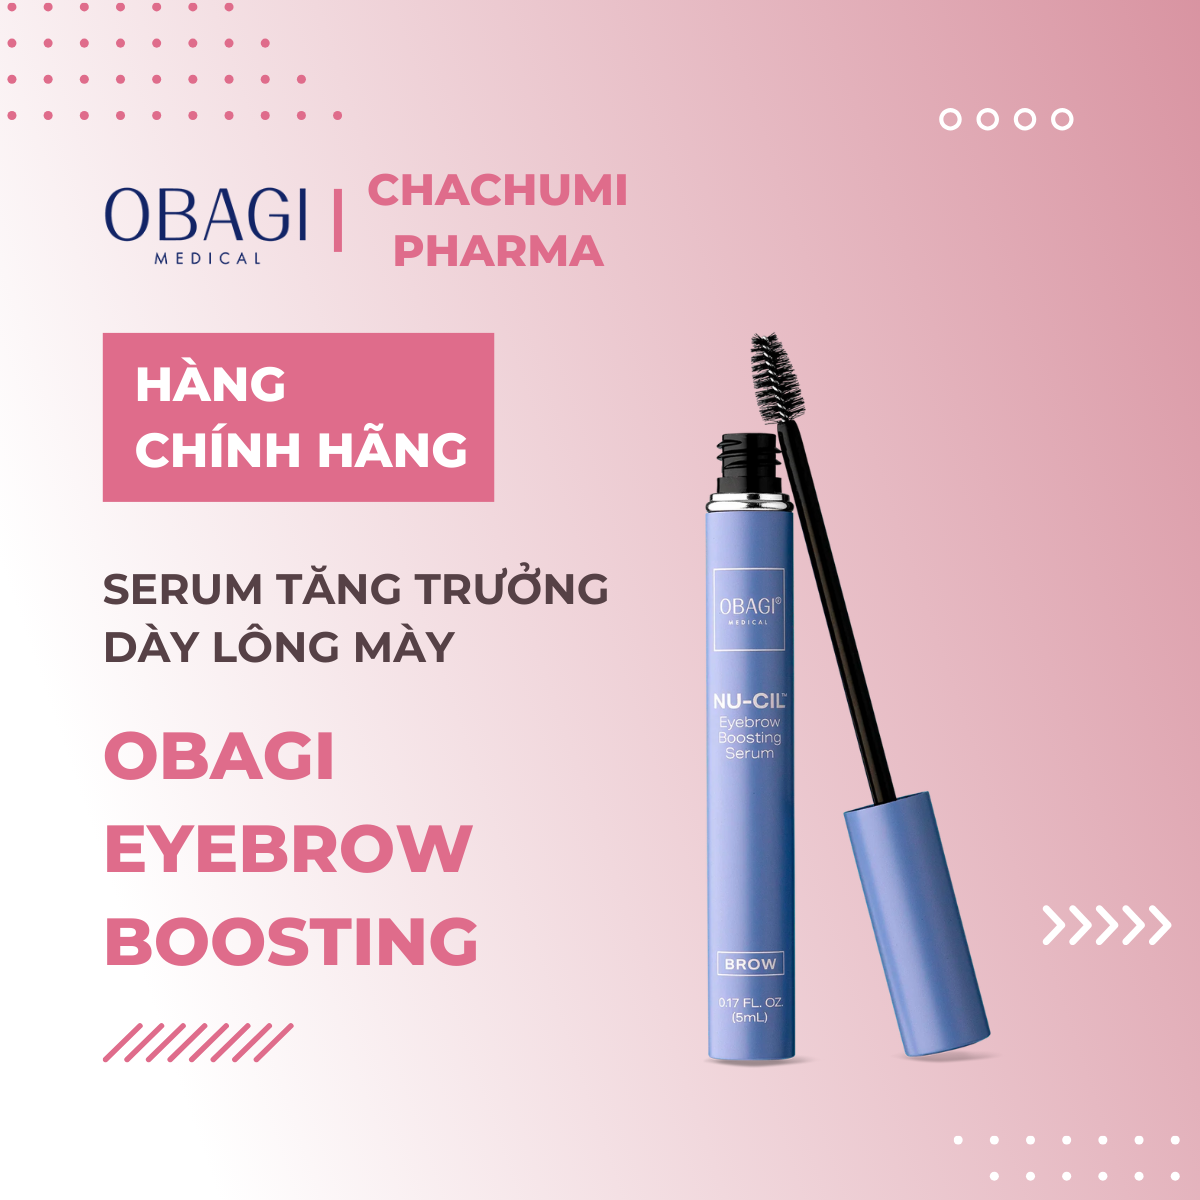 Obagi Eyebrow Boosting 5ml - Serum Tăng Trưởng Dày Lông Mày